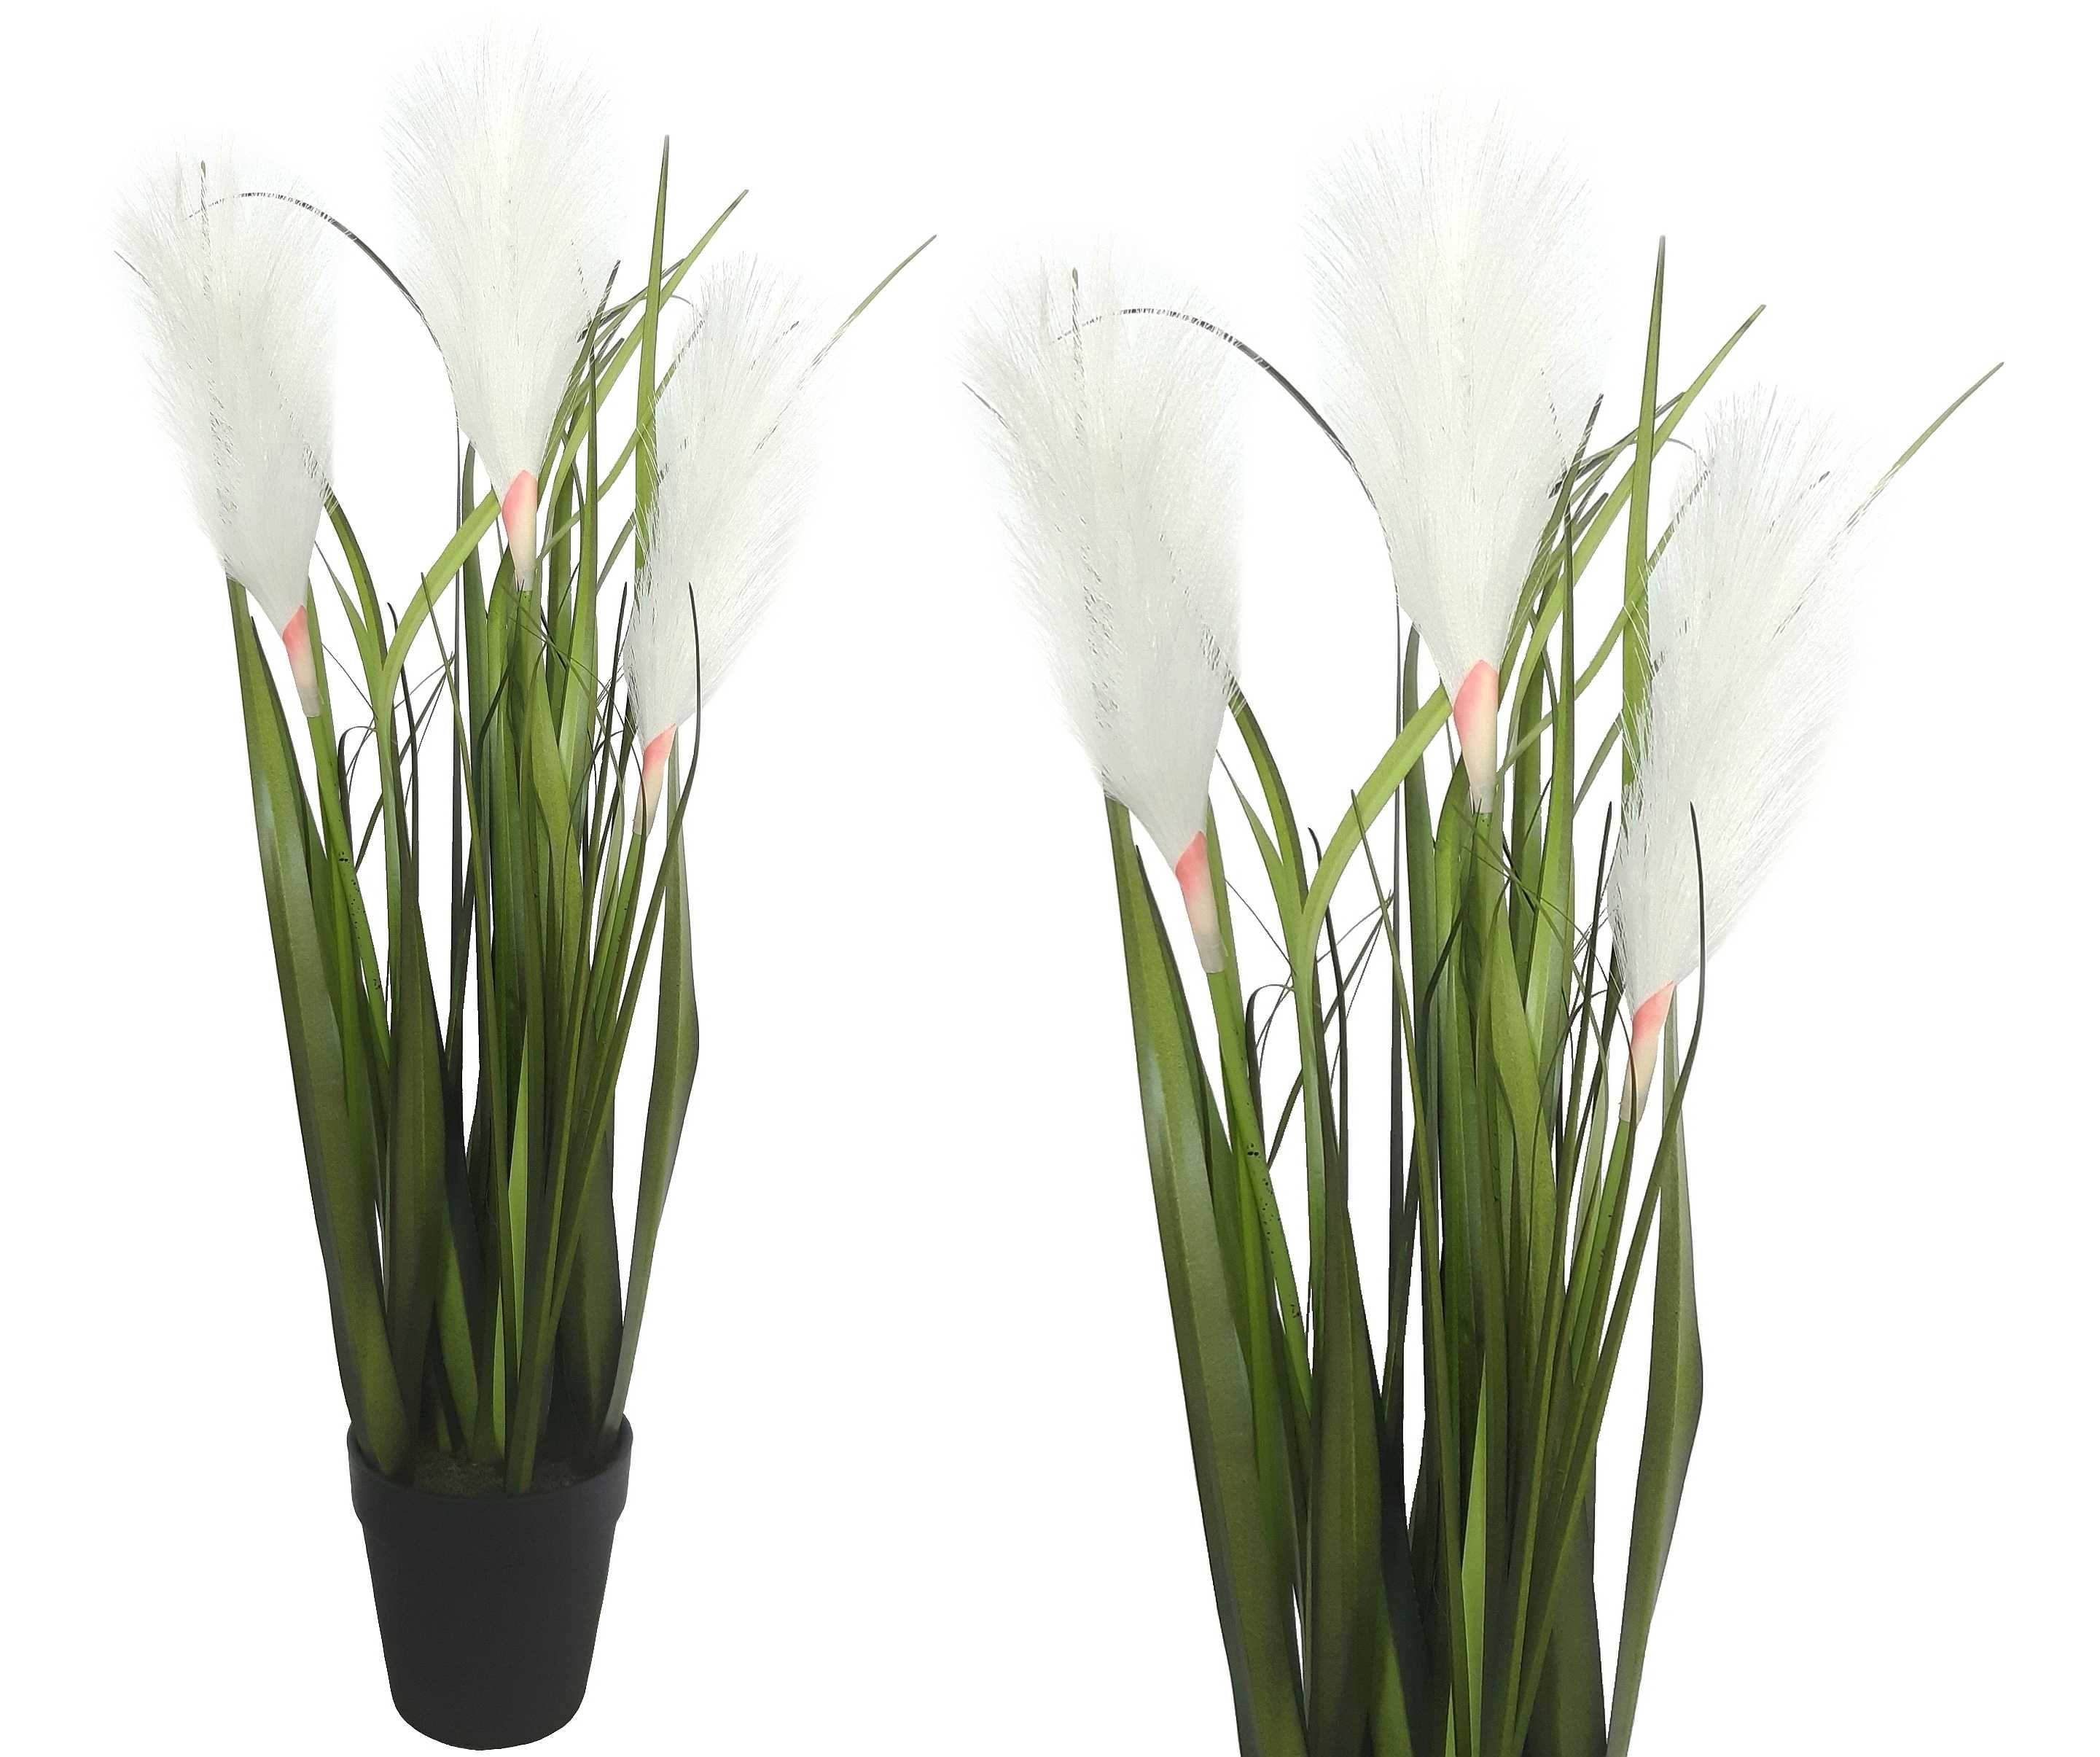 Sztuczna trawa pampasowa w doniczce z białymi kwiatami 55 cm